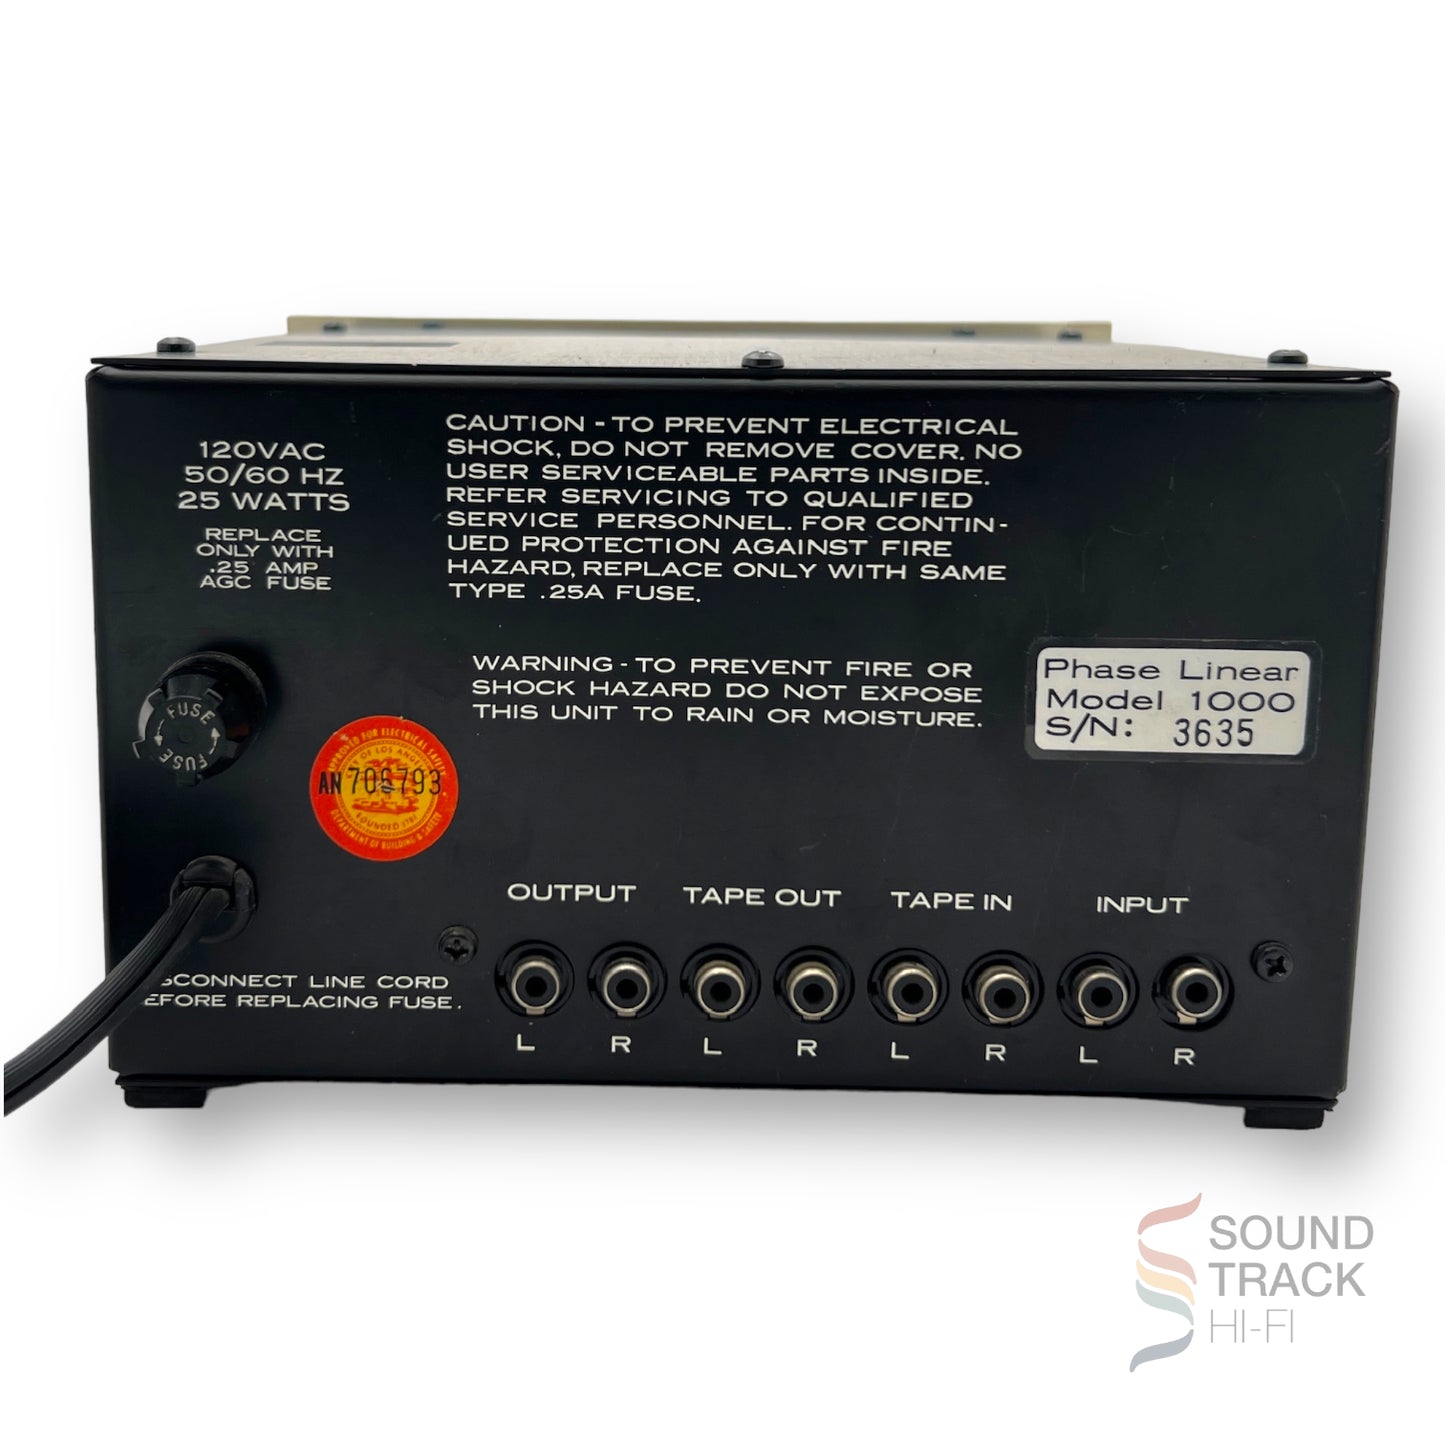 Phase Linear 1000 Autocorrelator Noise Reduction System